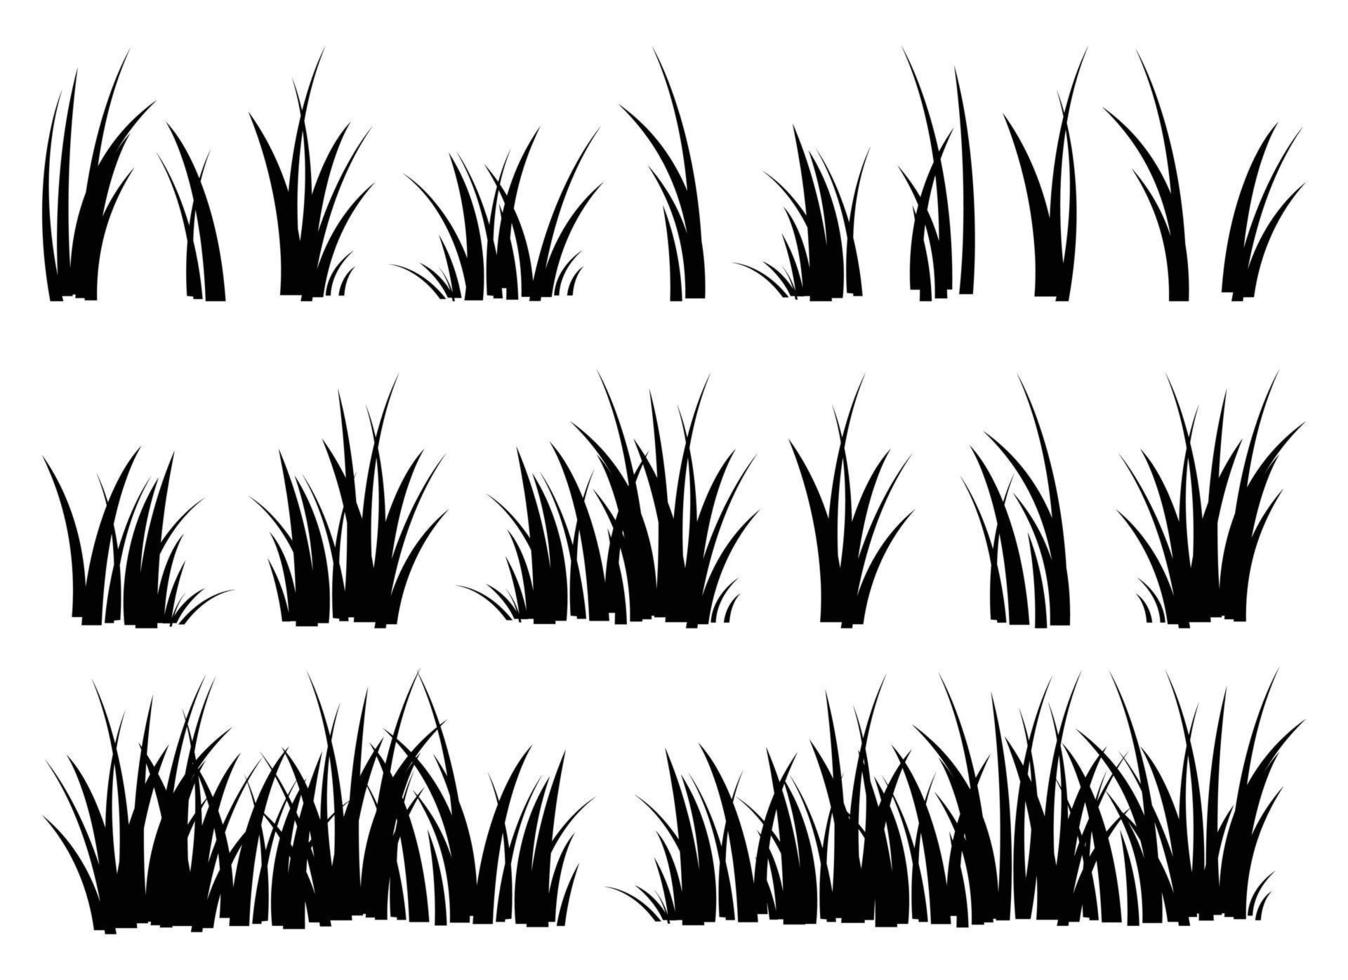 dessin animé silhouette herbe feuilles collection vecteur illustration isolé sur blanc